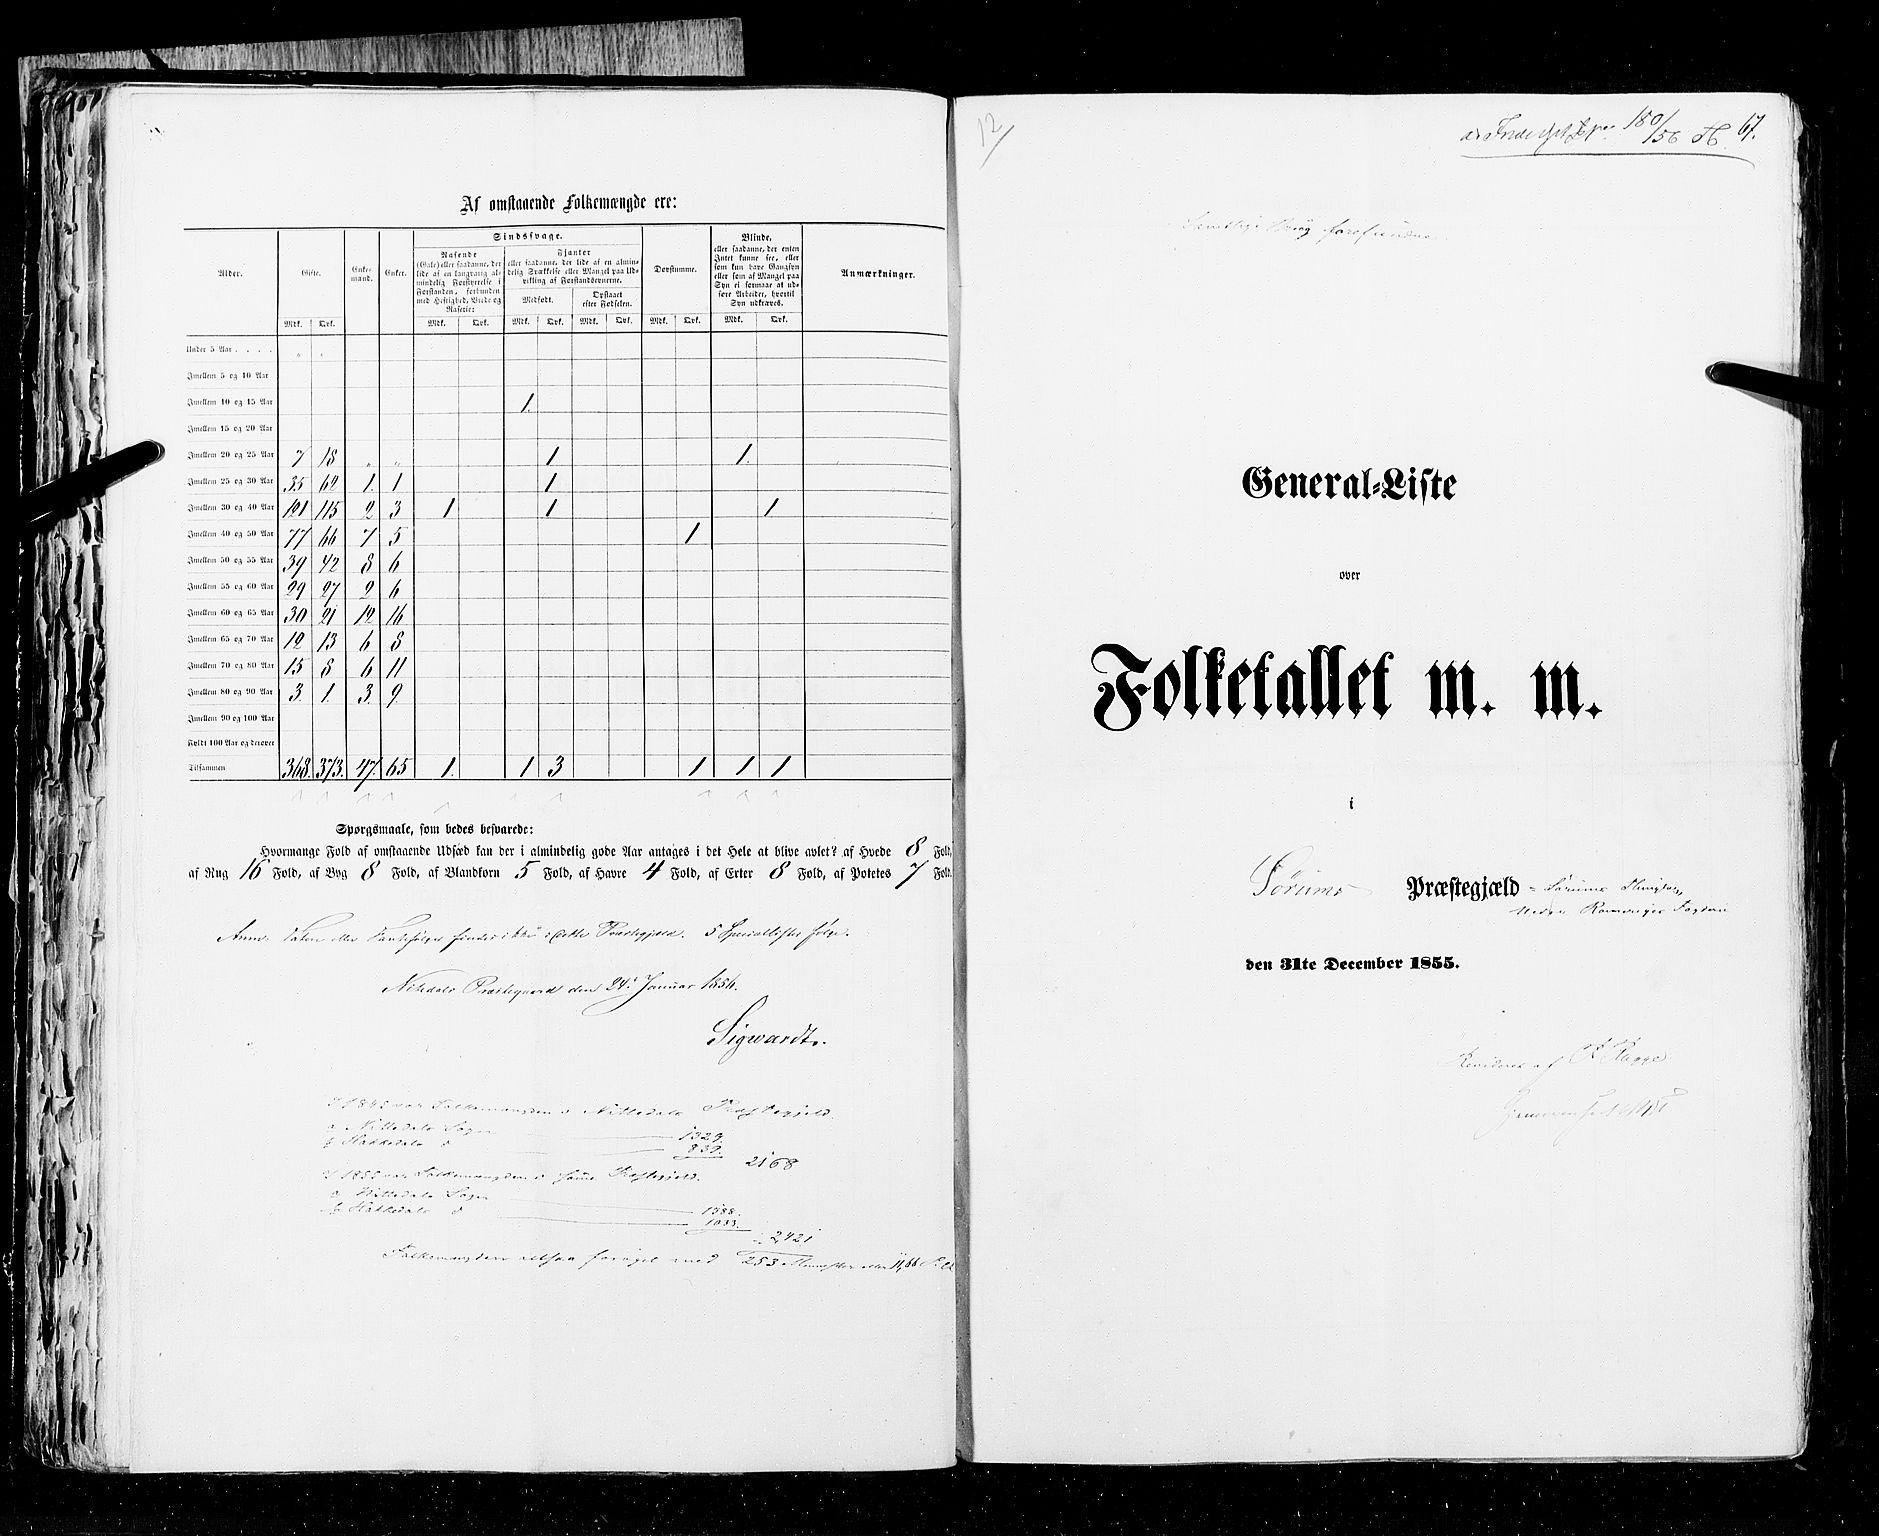 RA, Census 1855, vol. 1: Akershus amt, Smålenenes amt og Hedemarken amt, 1855, p. 67